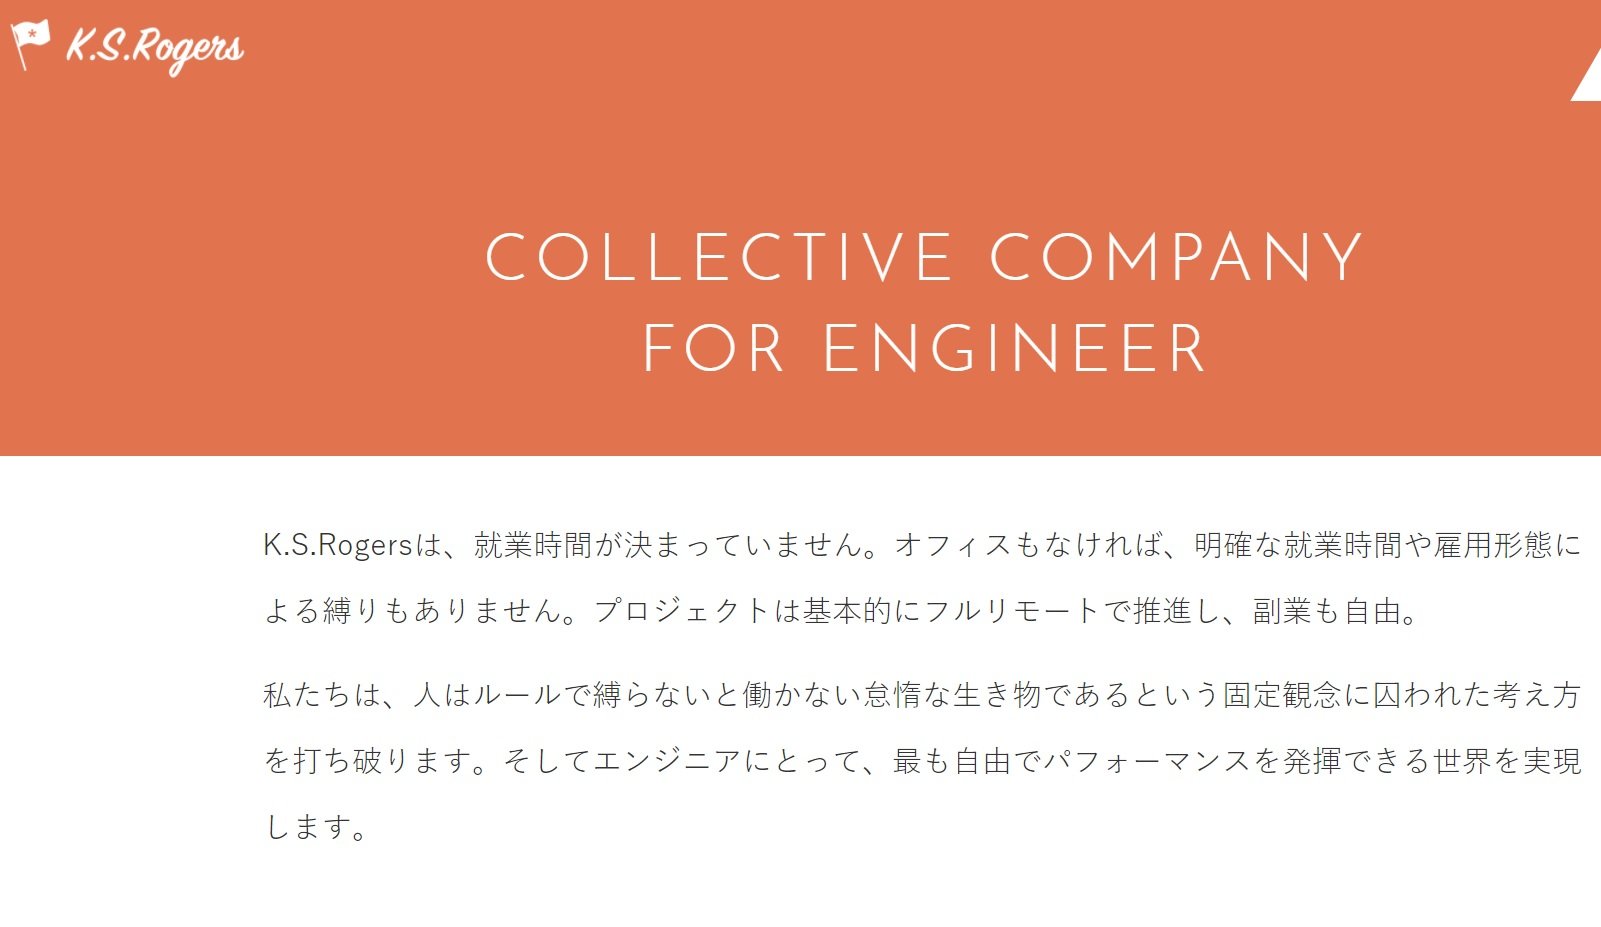 エンジニアの自由度高めて「採用の差別化」図る　神戸市のITベンチャーが「フリーランス型社員制度」を導入